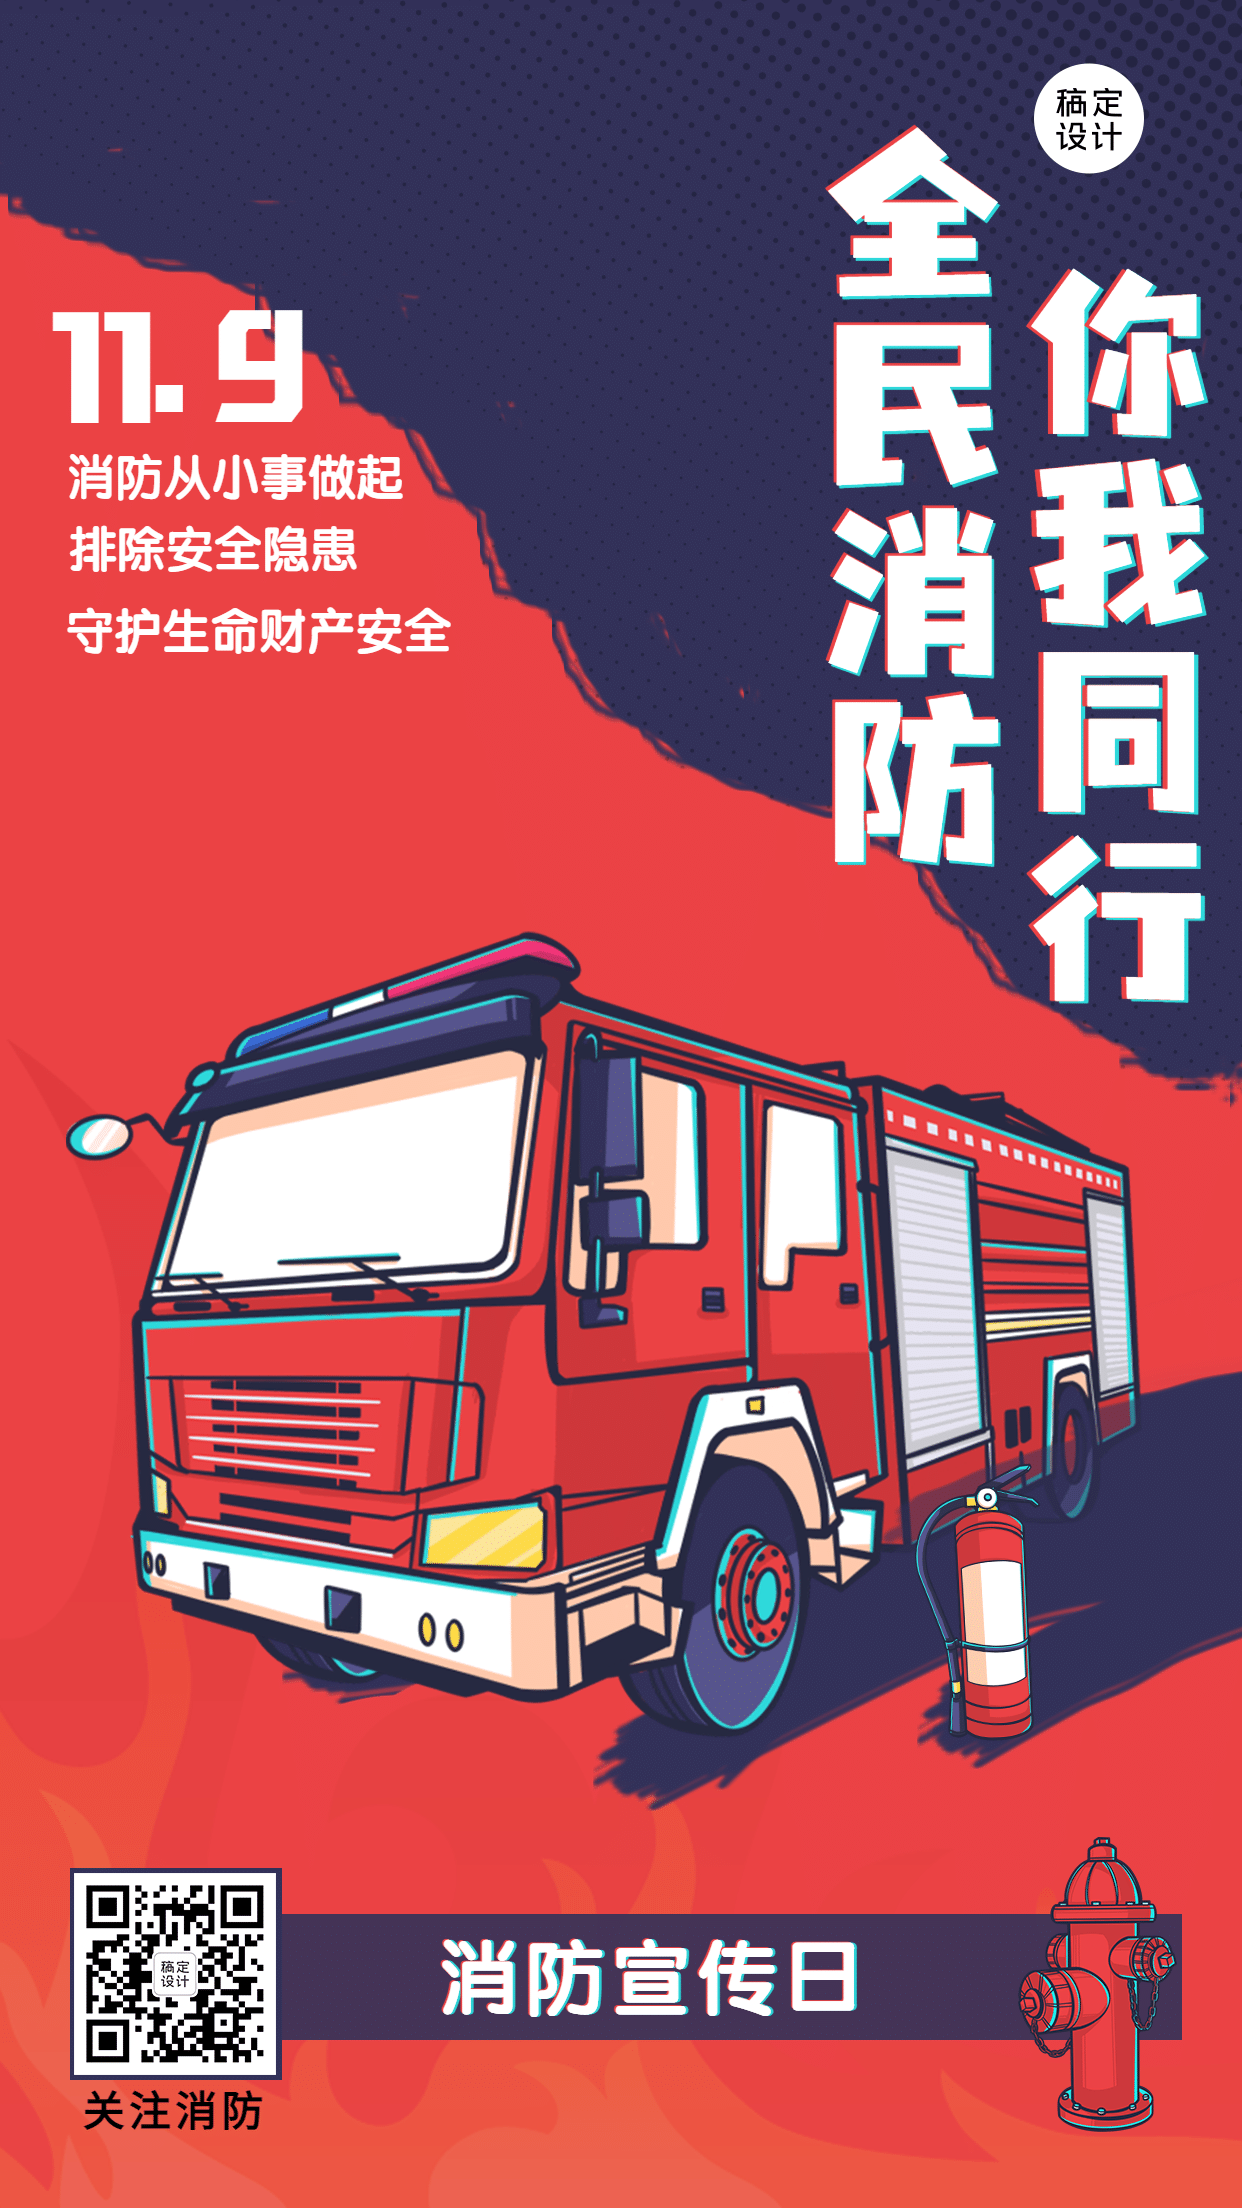 119消防宣传日消防知识科普手机海报预览效果